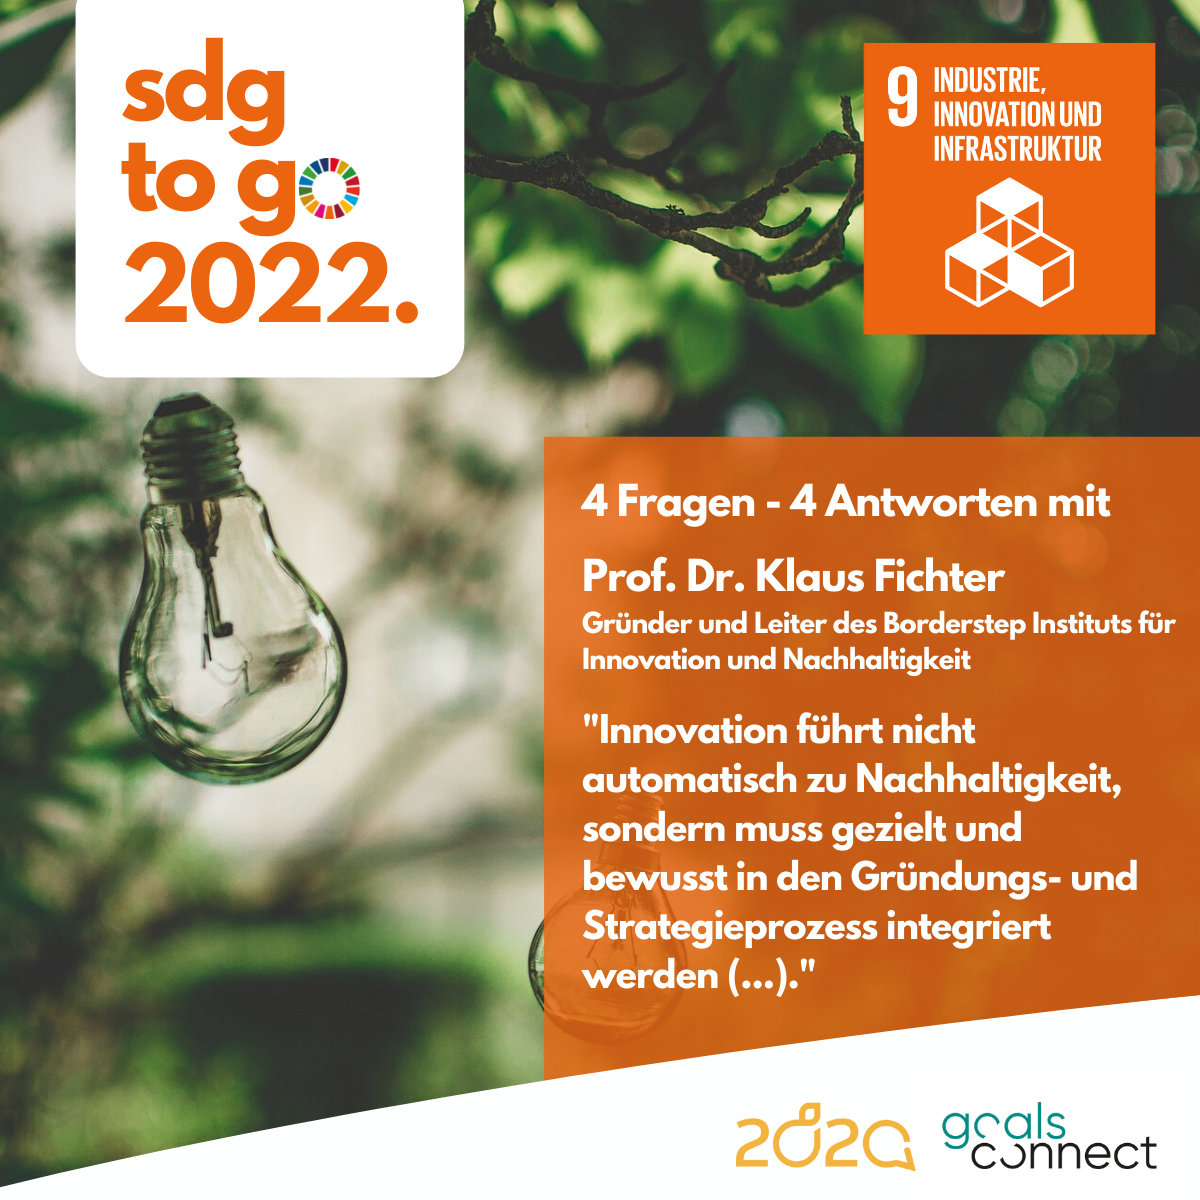 SDG to go – Heute: SDG 9 „Industrie, Innovation und Infrastruktur“